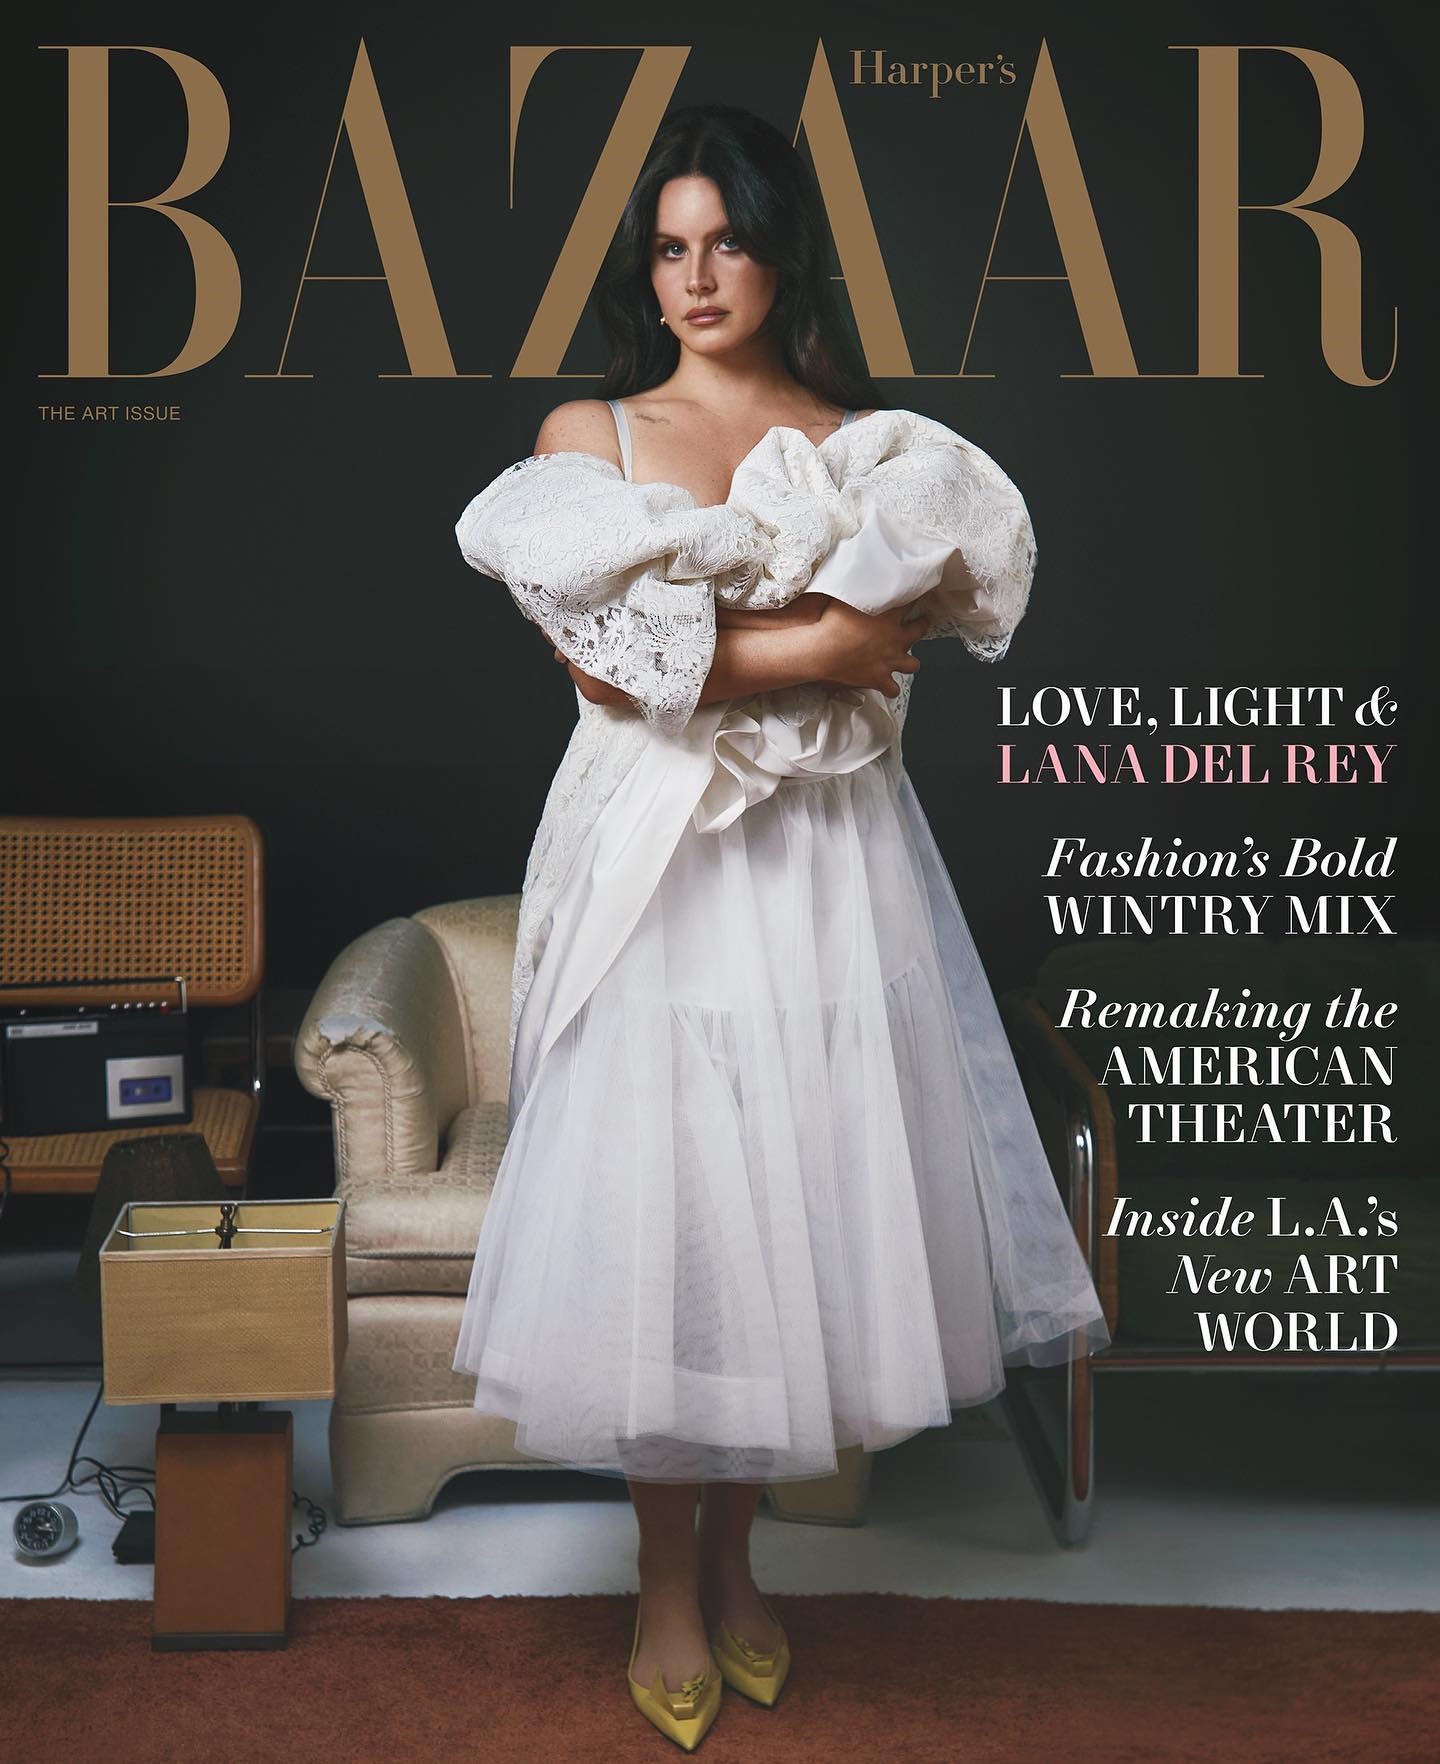 Очень красивая и сексуальная Лана Дель Рей появилась на страницах Harper's Bazaar. Топ фото Ланы Дель Рей, сделанных папарацци, где она совсем не так привлекательна